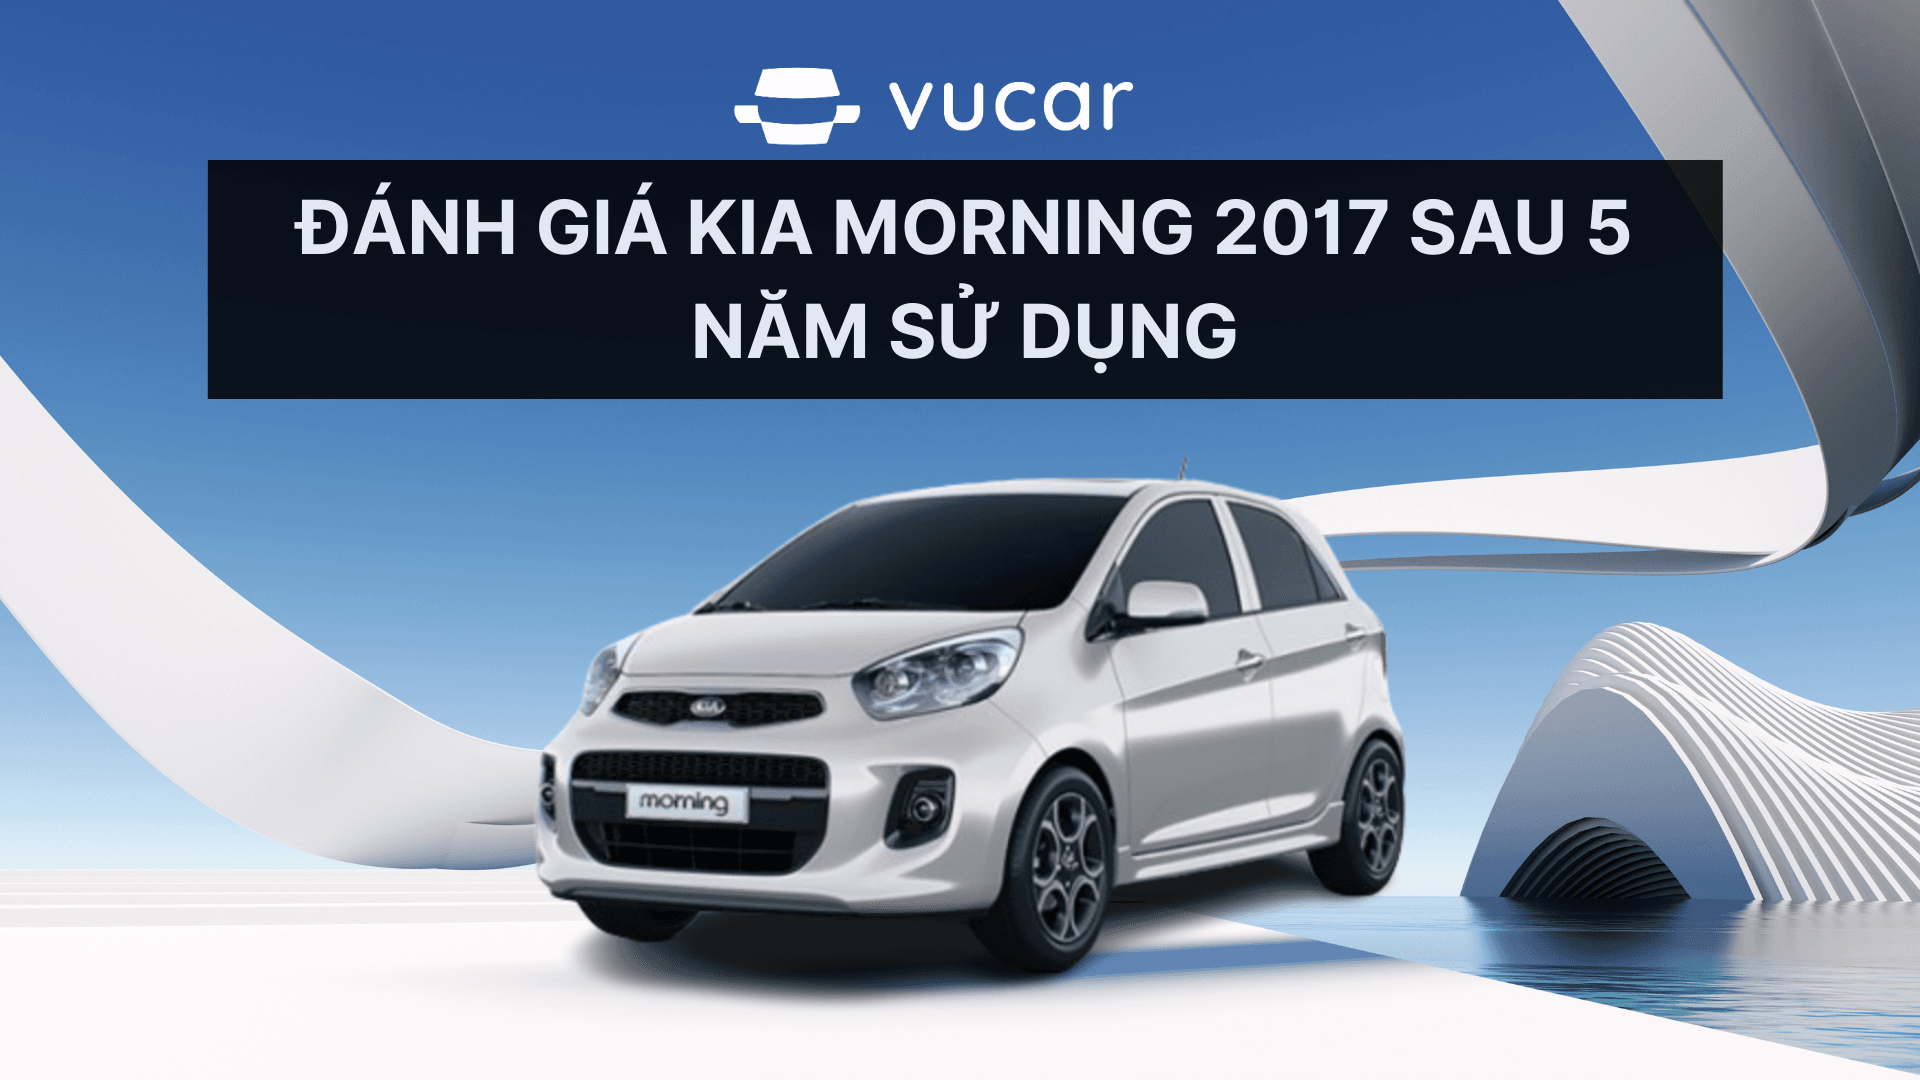 Đánh giá Kia Morning 2017 sau 5 năm sử dụng